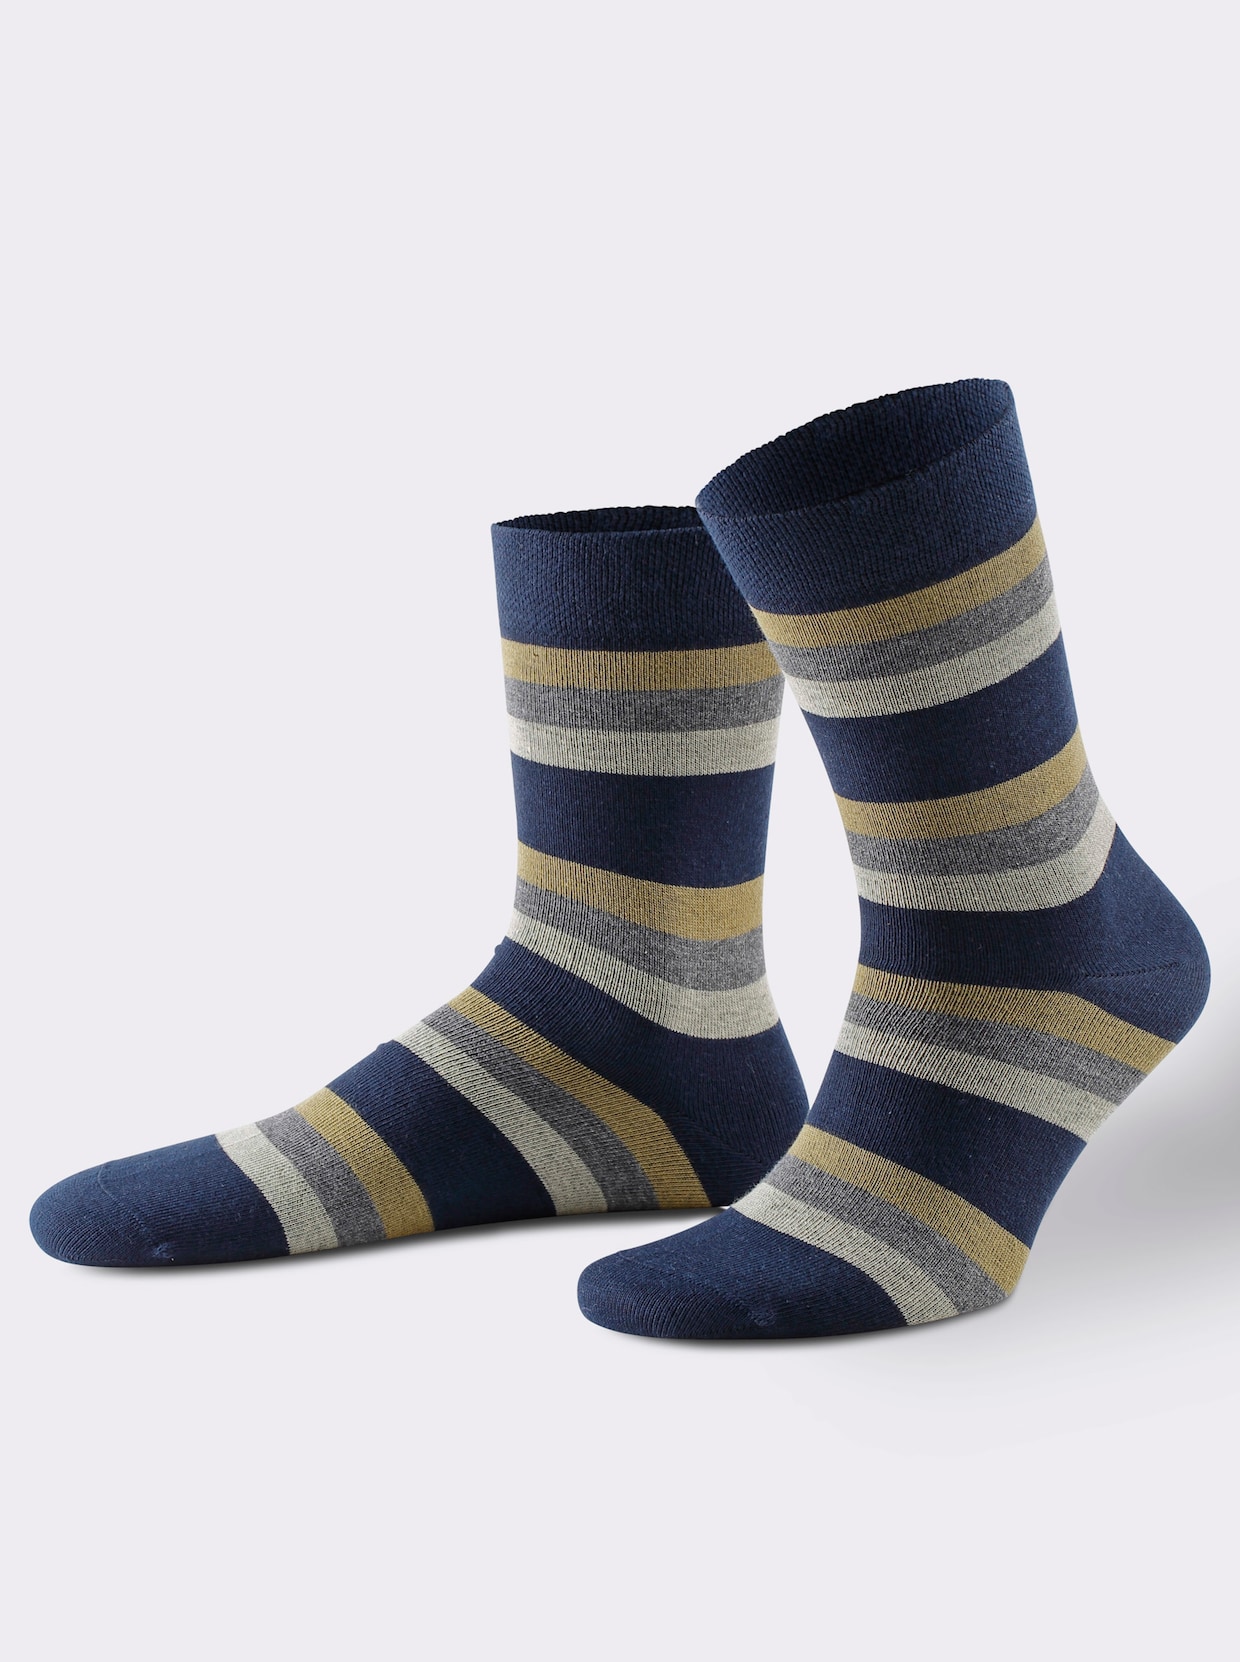 wäschepur Ponožky - zoradenie podľa farieb